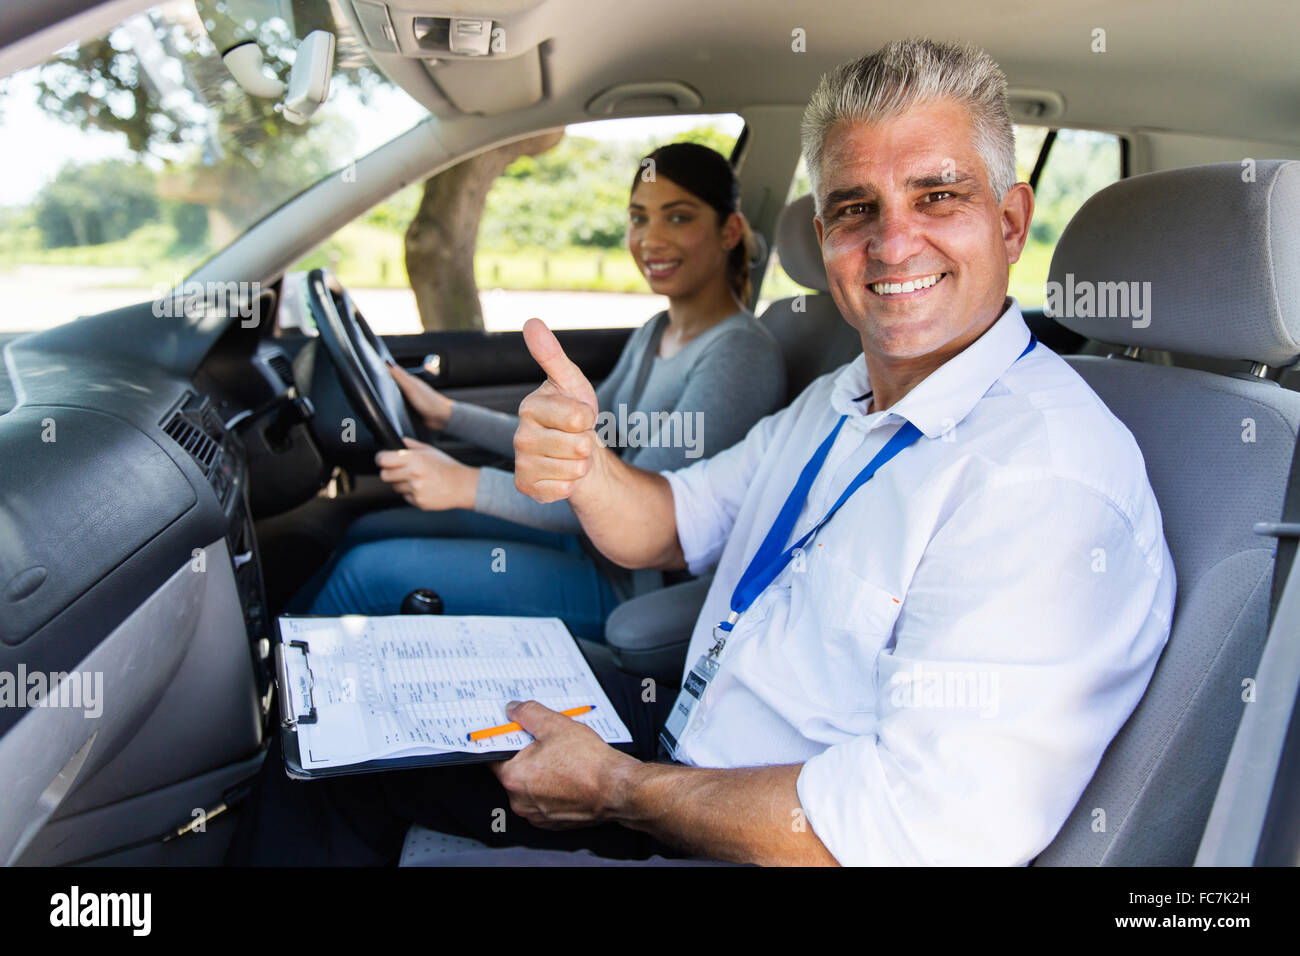 Smiling senior homme instructeur de conduite dans une voiture avec chauffeur l'apprenant giving thumb up Banque D'Images